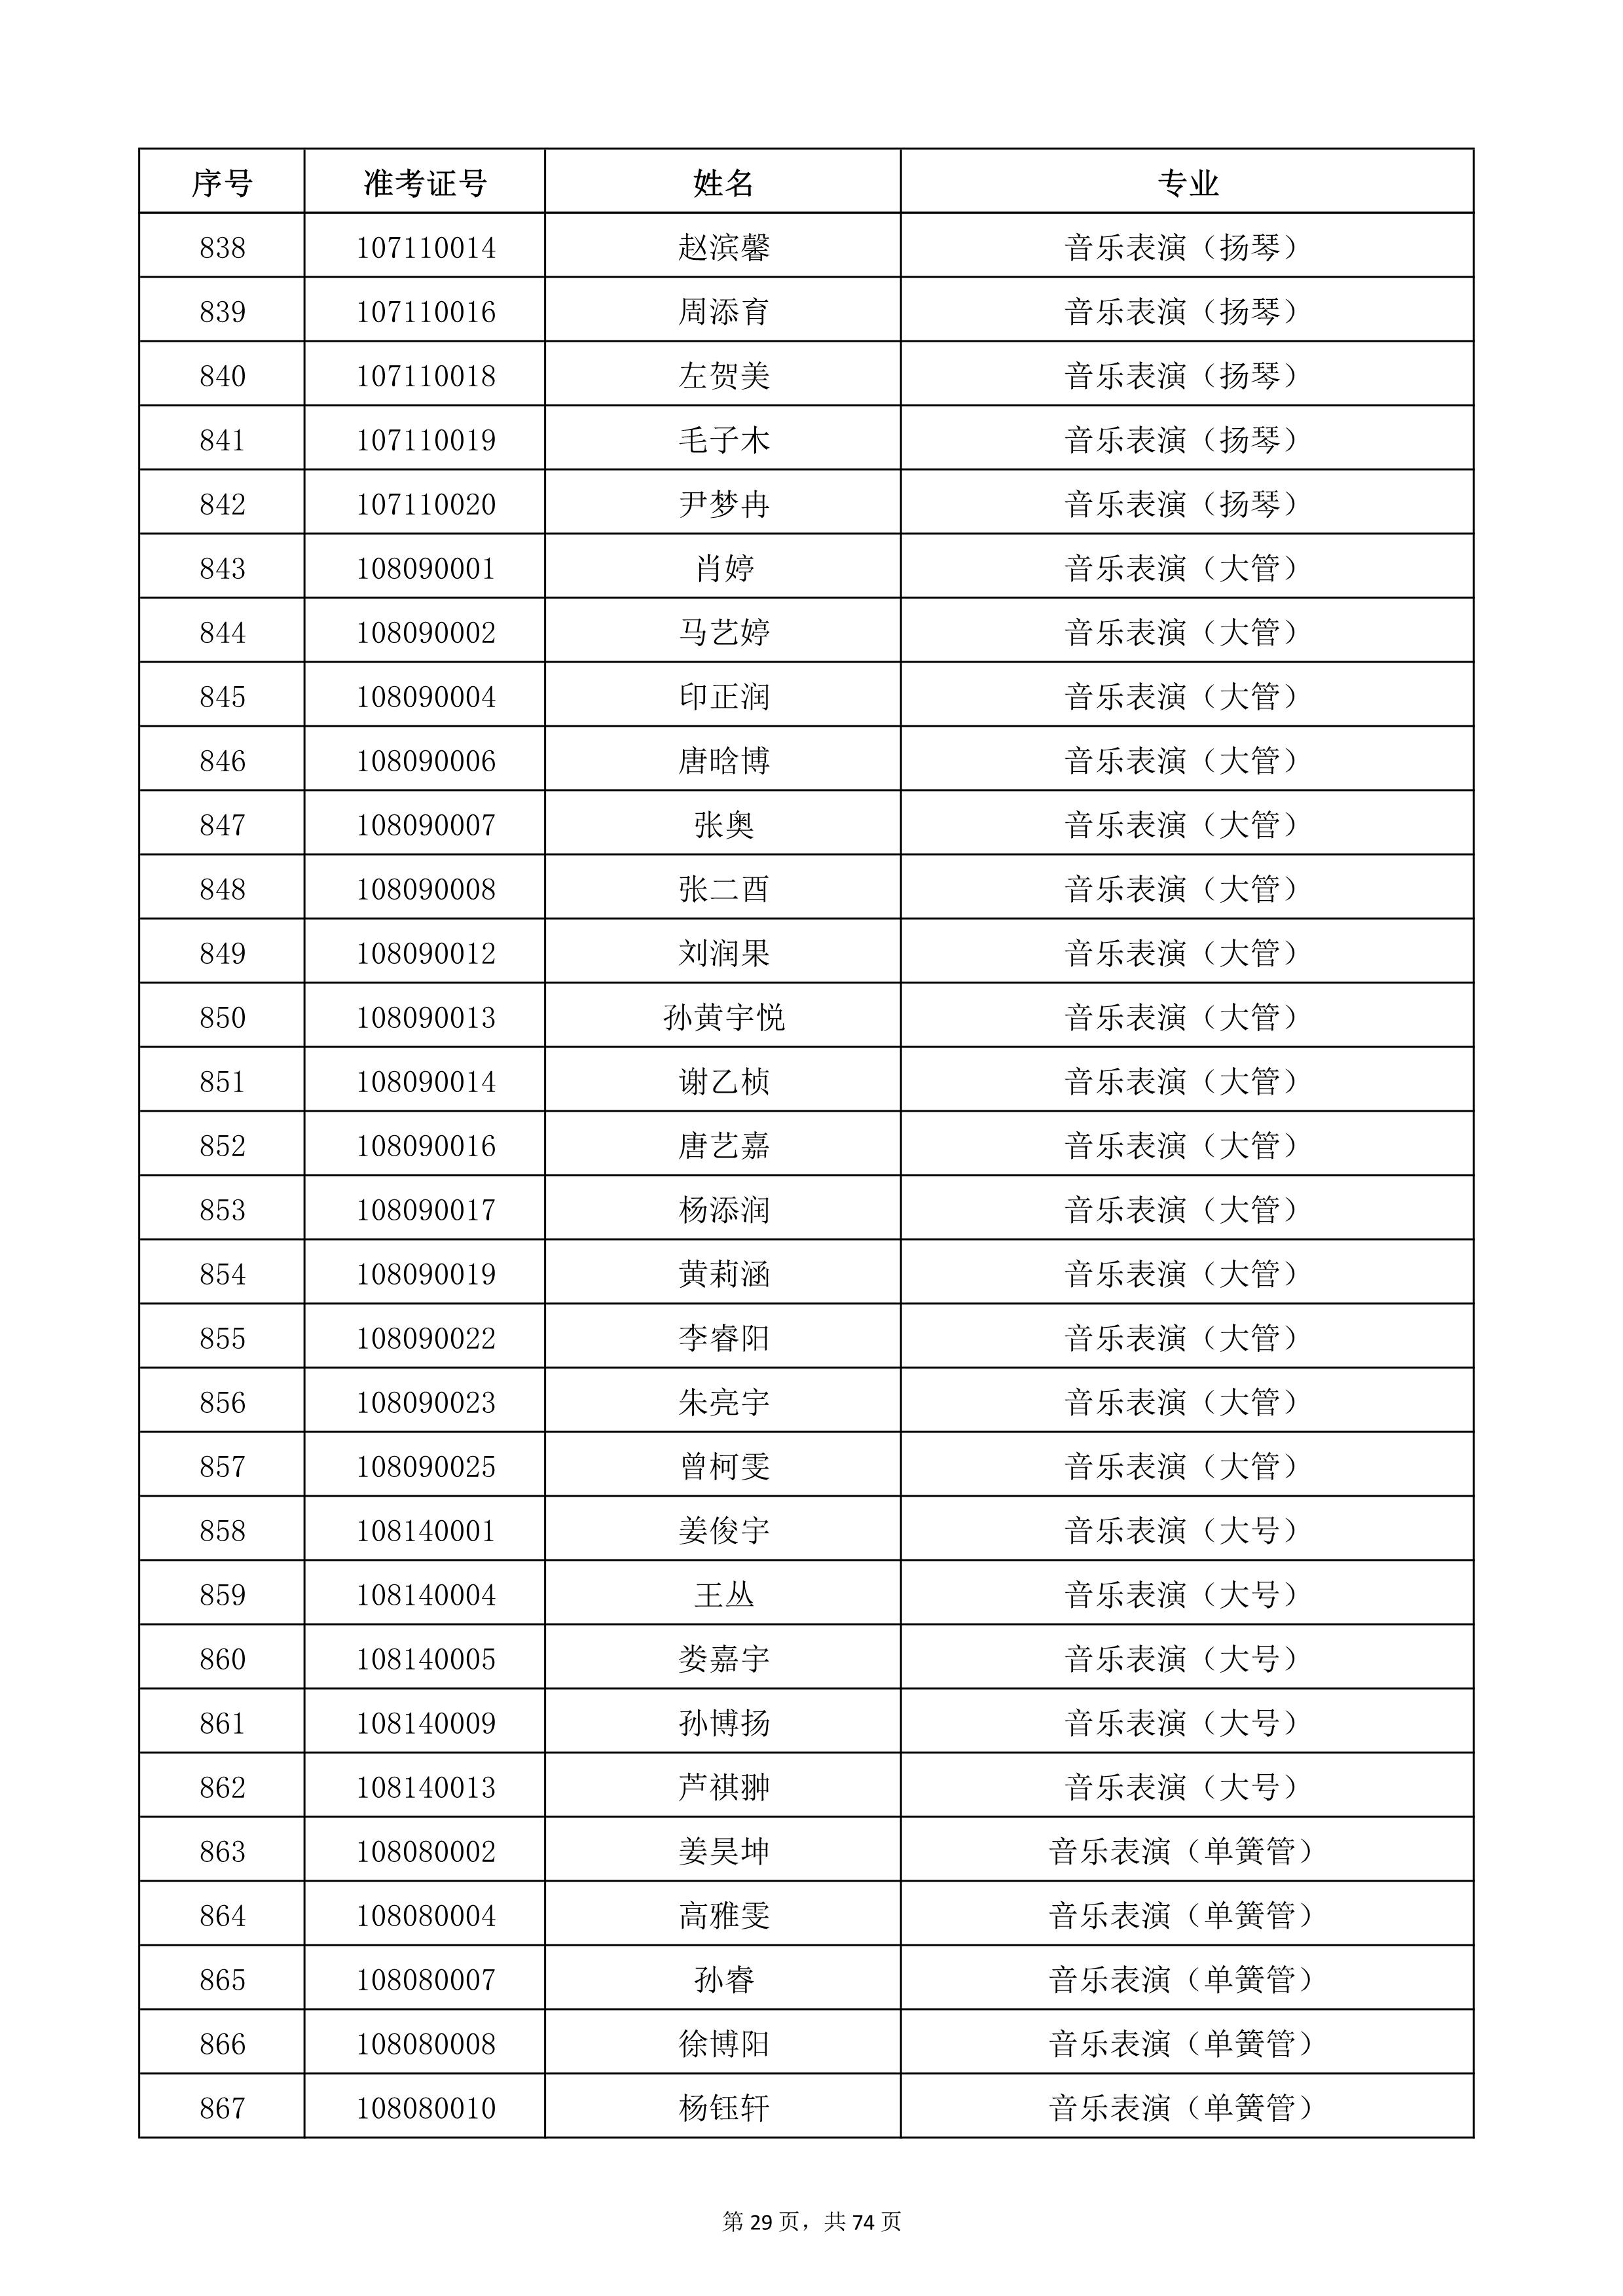 天津音乐学院2022年本科招生考试复试名单_29.jpg